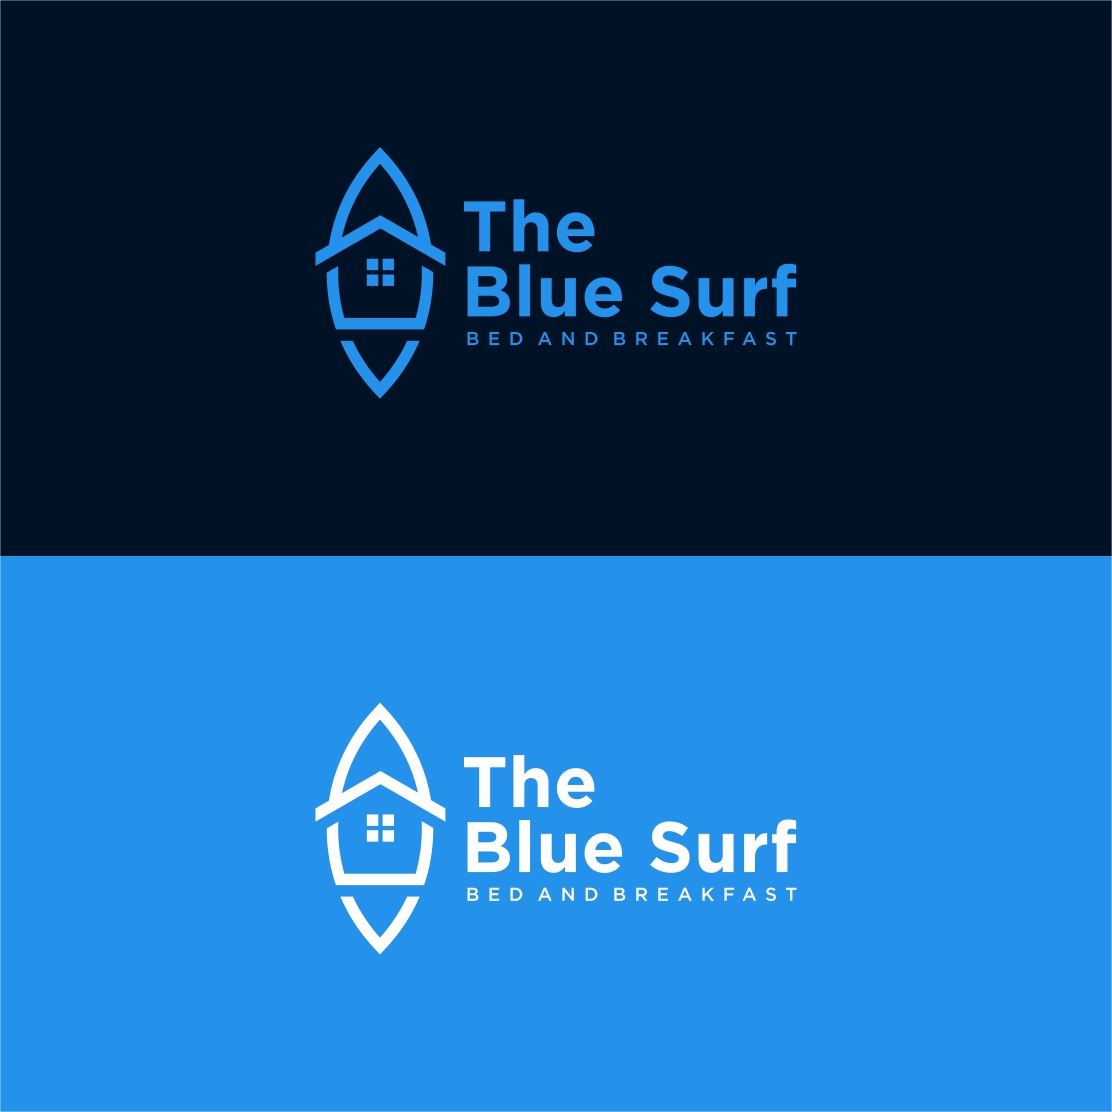 Surf House Logo Beachfront restaurant design illustration - only 8$ cover image.